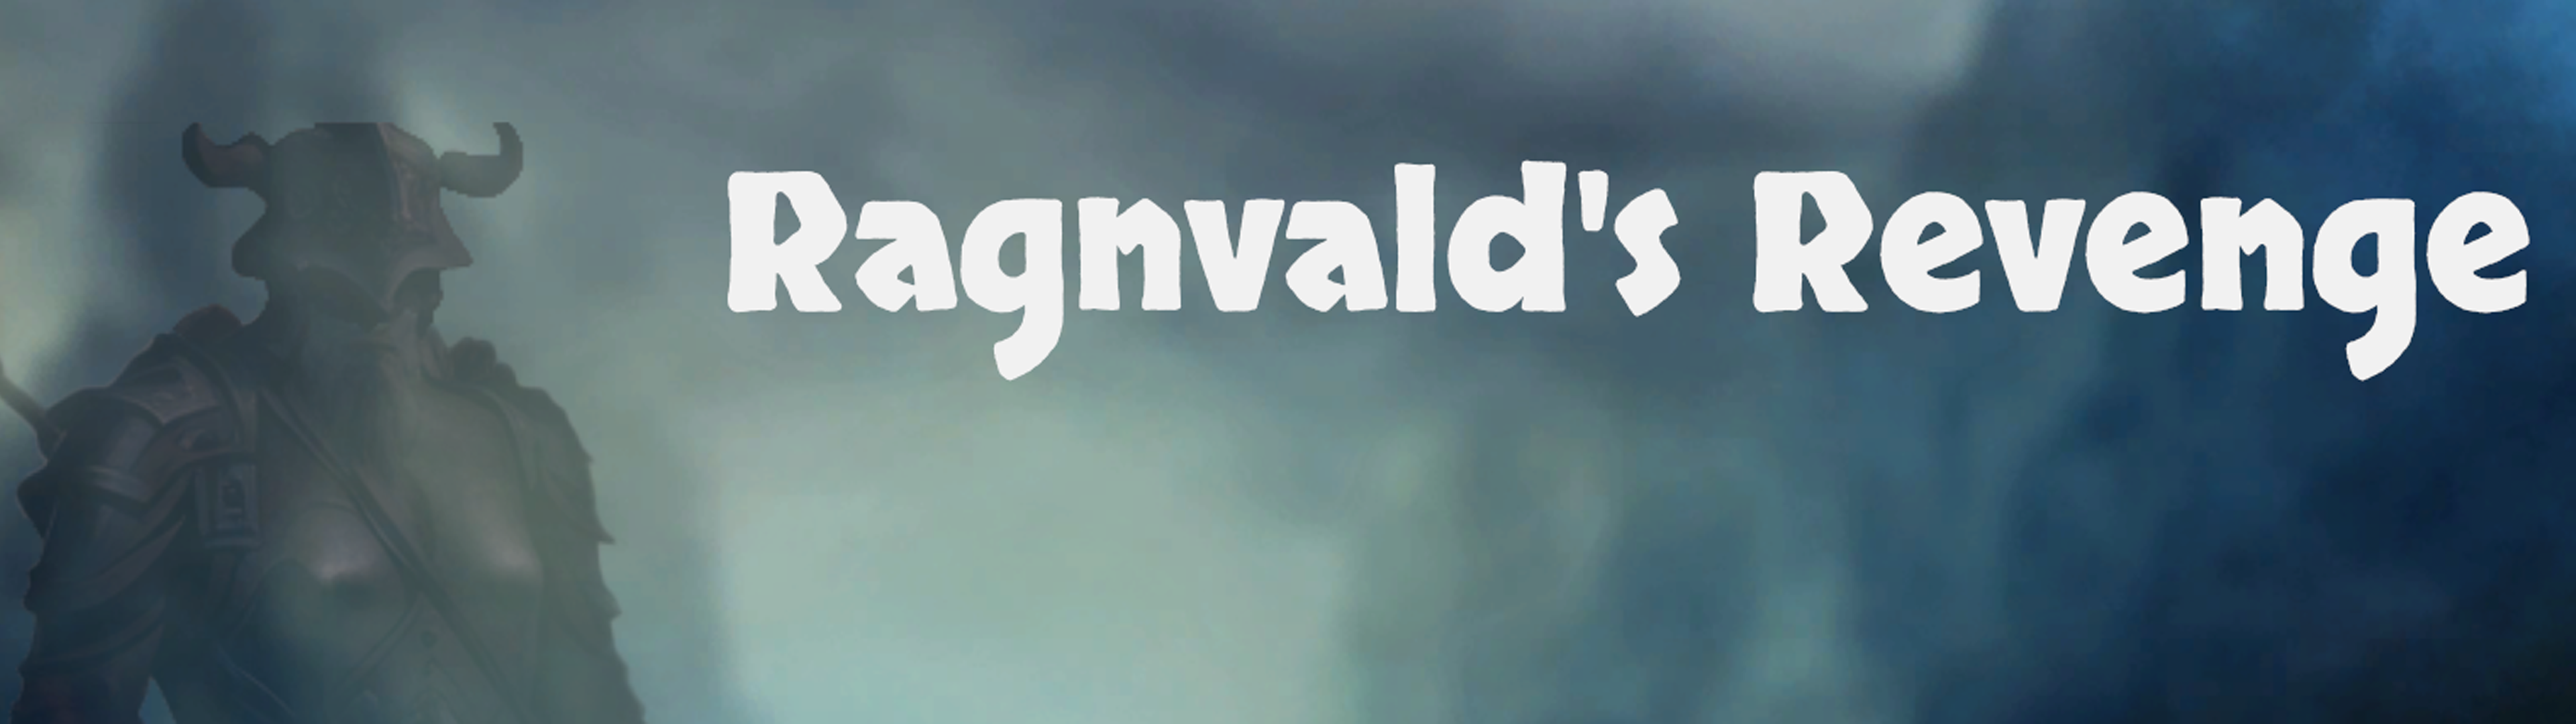 Ragnvald's Revenge